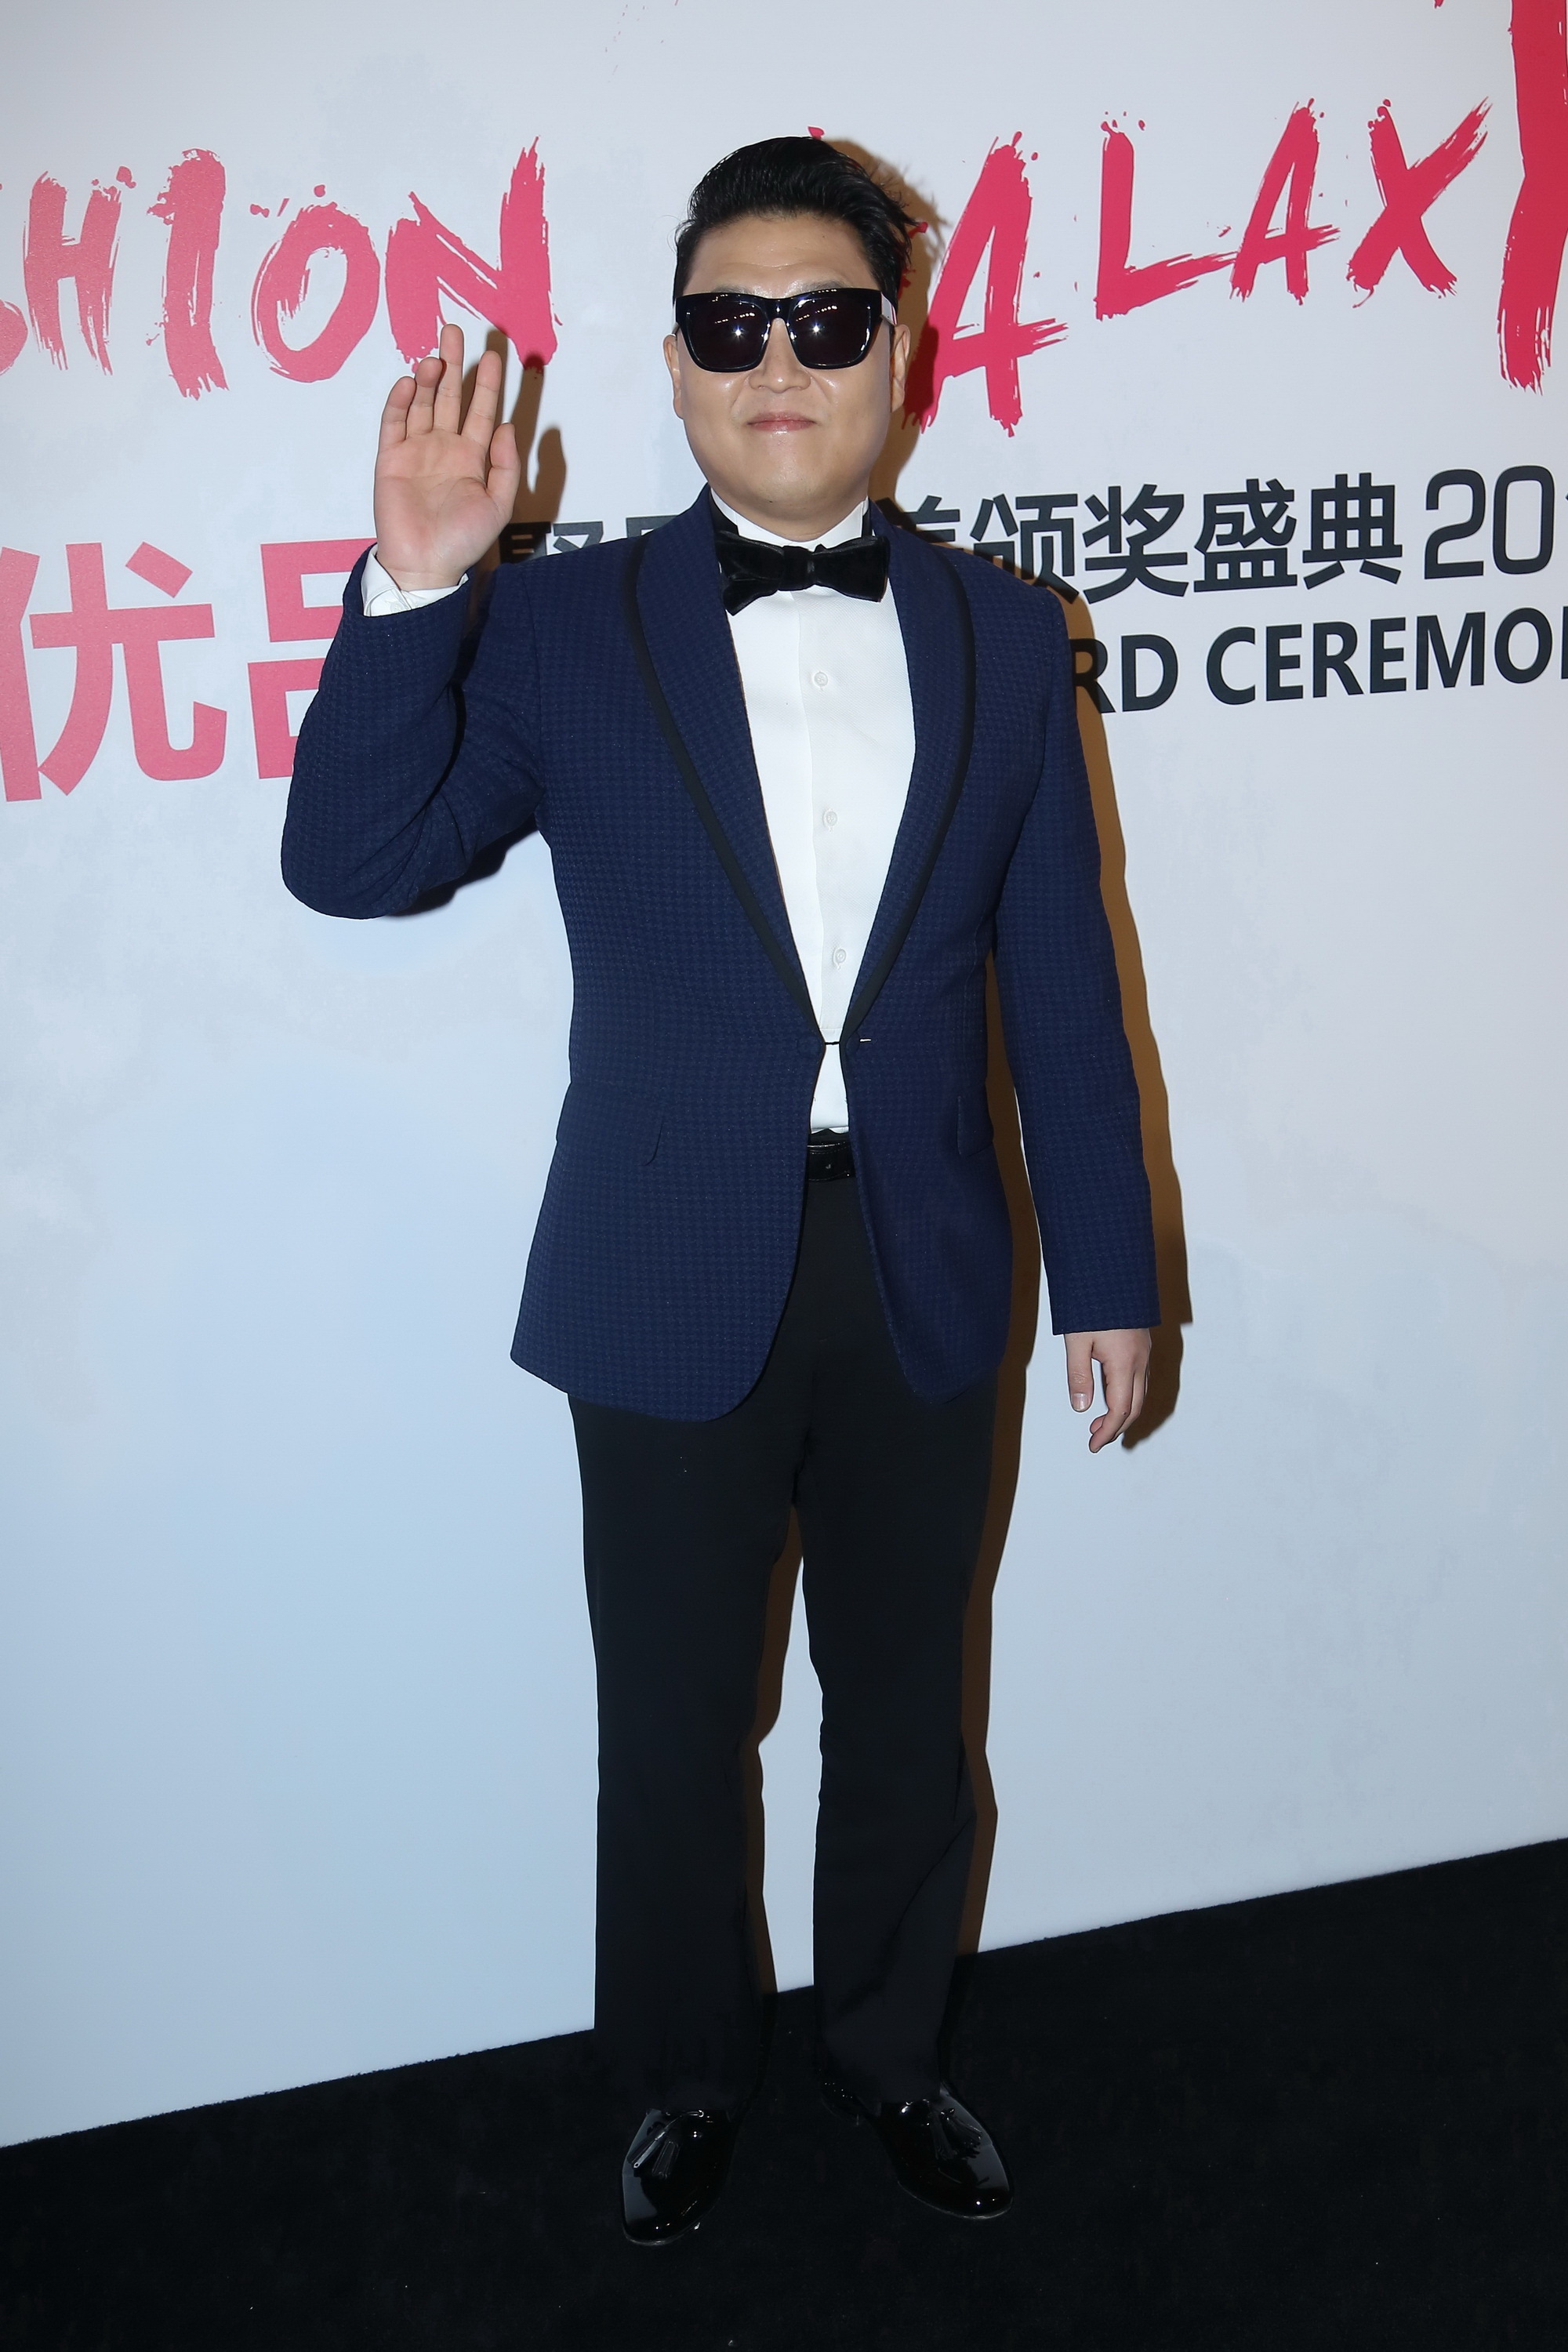 Psy bei der Preisverleihung von Fashion Galaxy am 29. Februar 2016 in Peking, China. | Quelle: Getty Images